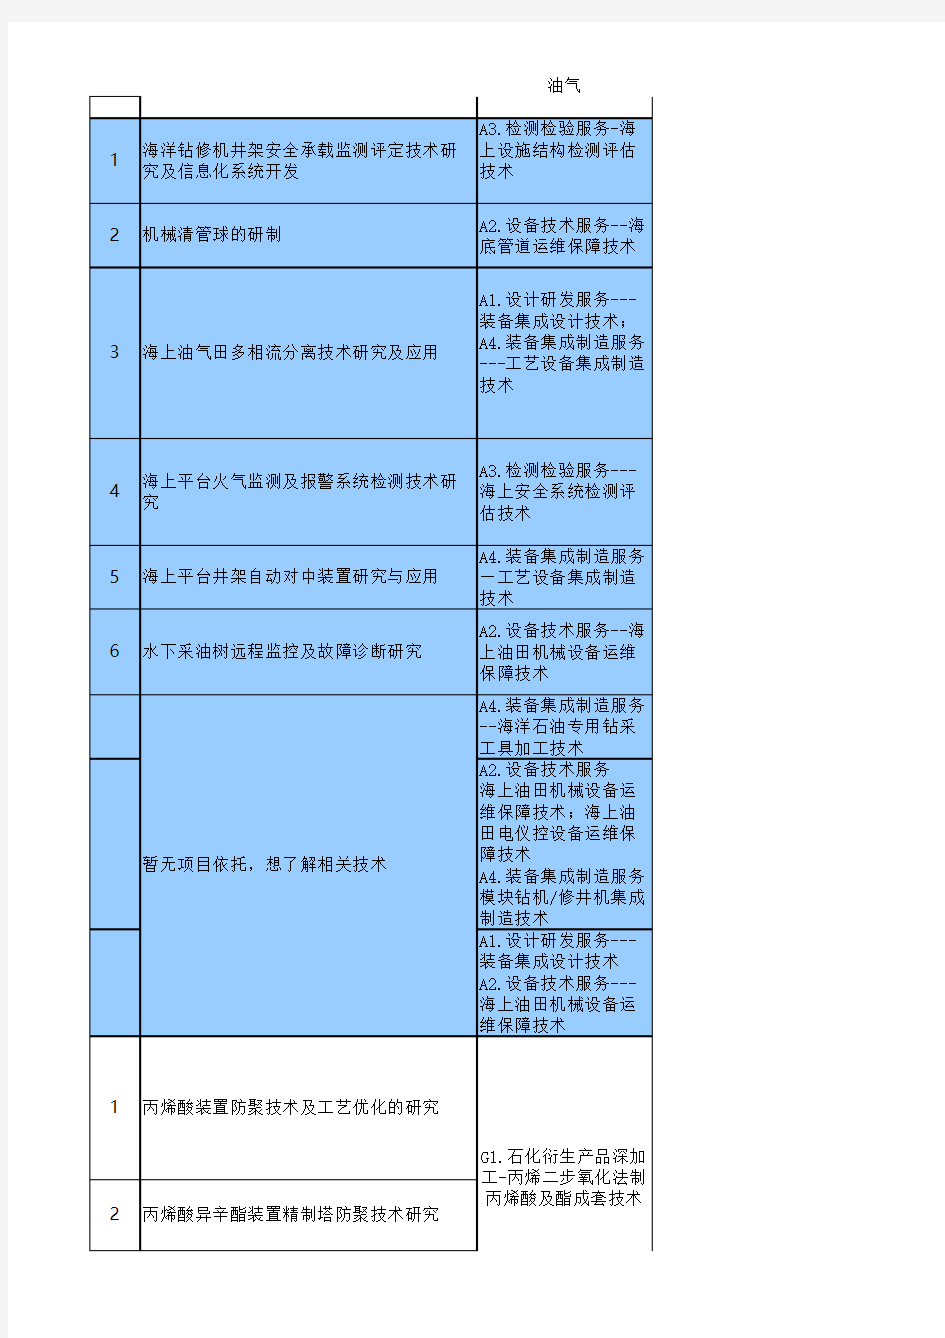 中海油2014年科技立项项目清单